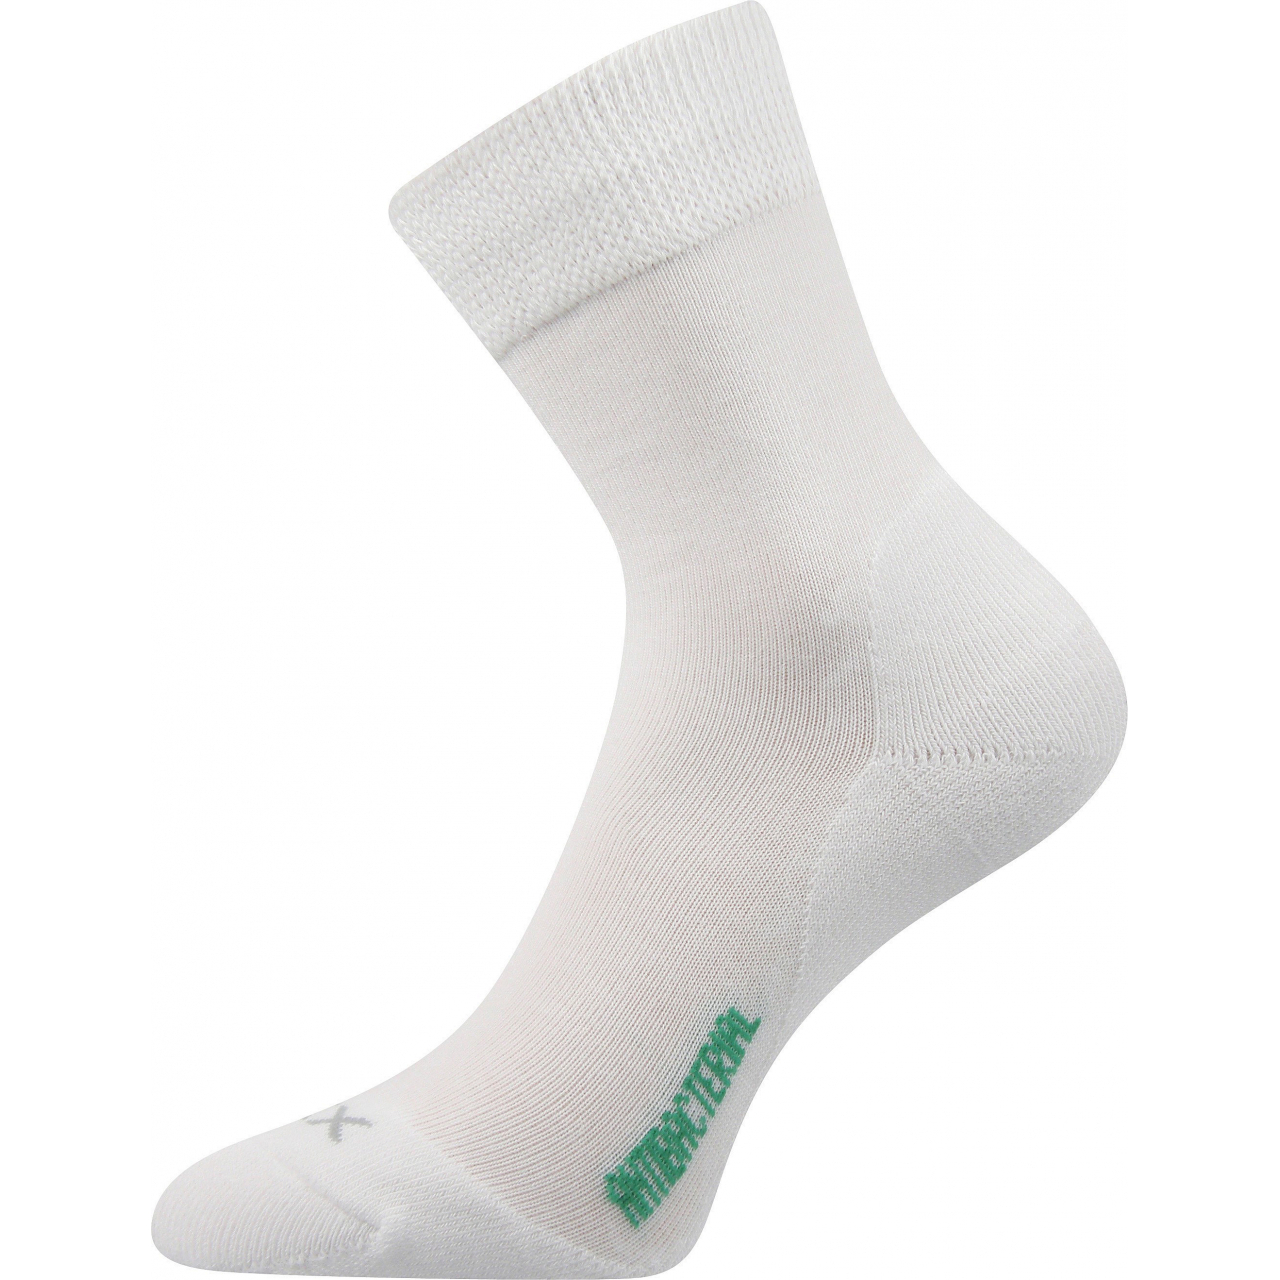 Ponožky zdravotní Voxx Zeus - bílé, 35-38